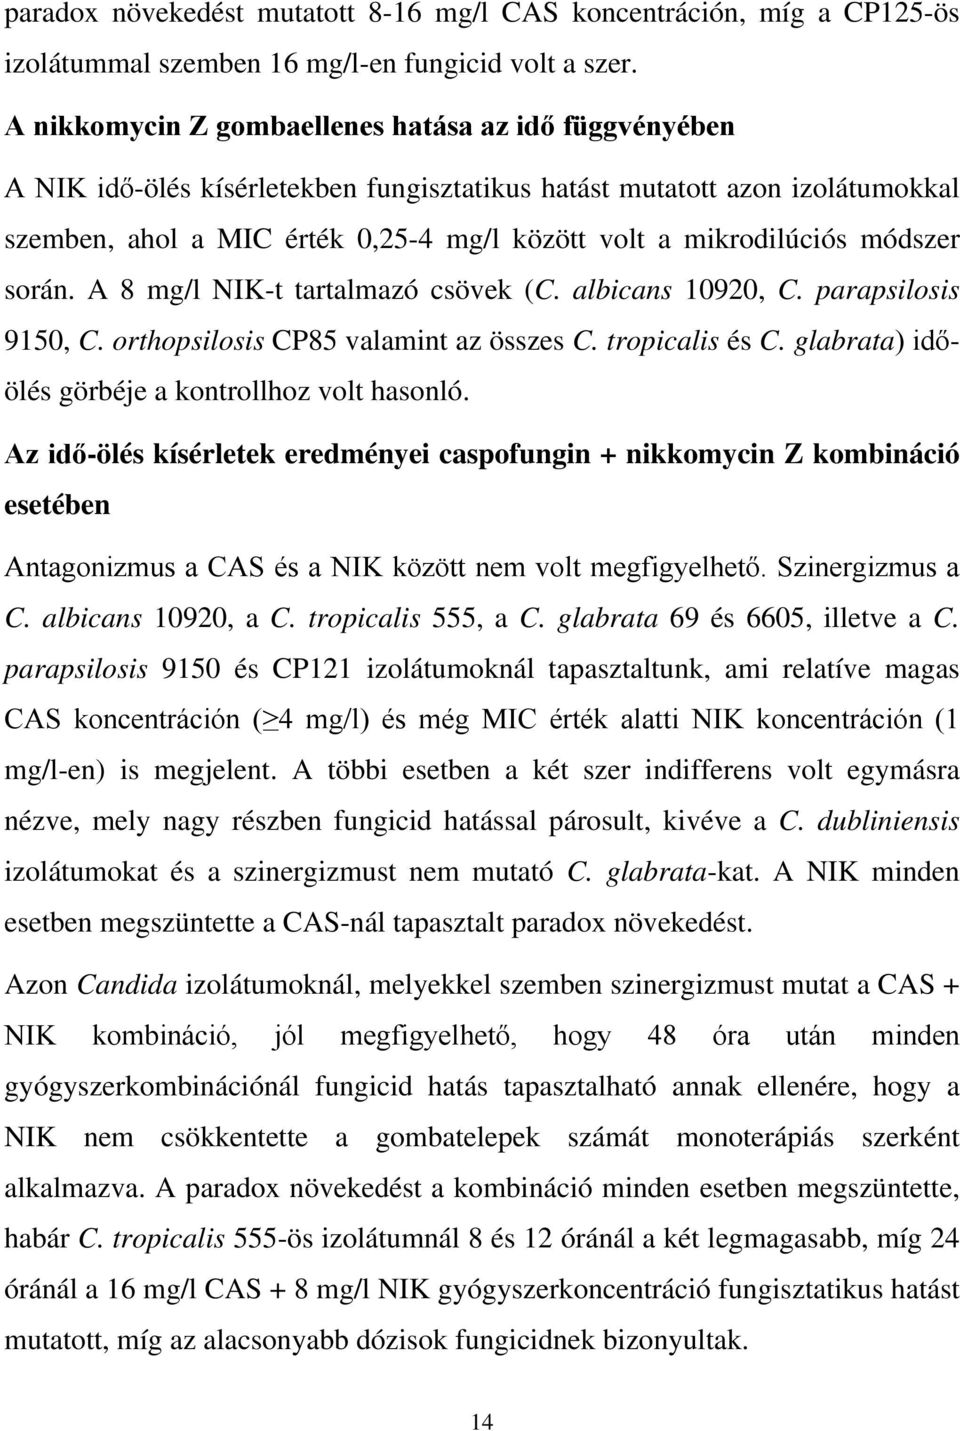 módszer során. A 8 mg/l NIK-t tartalmazó csövek (C. albicans 10920, C. parapsilosis 9150, C. orthopsilosis CP85 valamint az összes C. tropicalis és C.